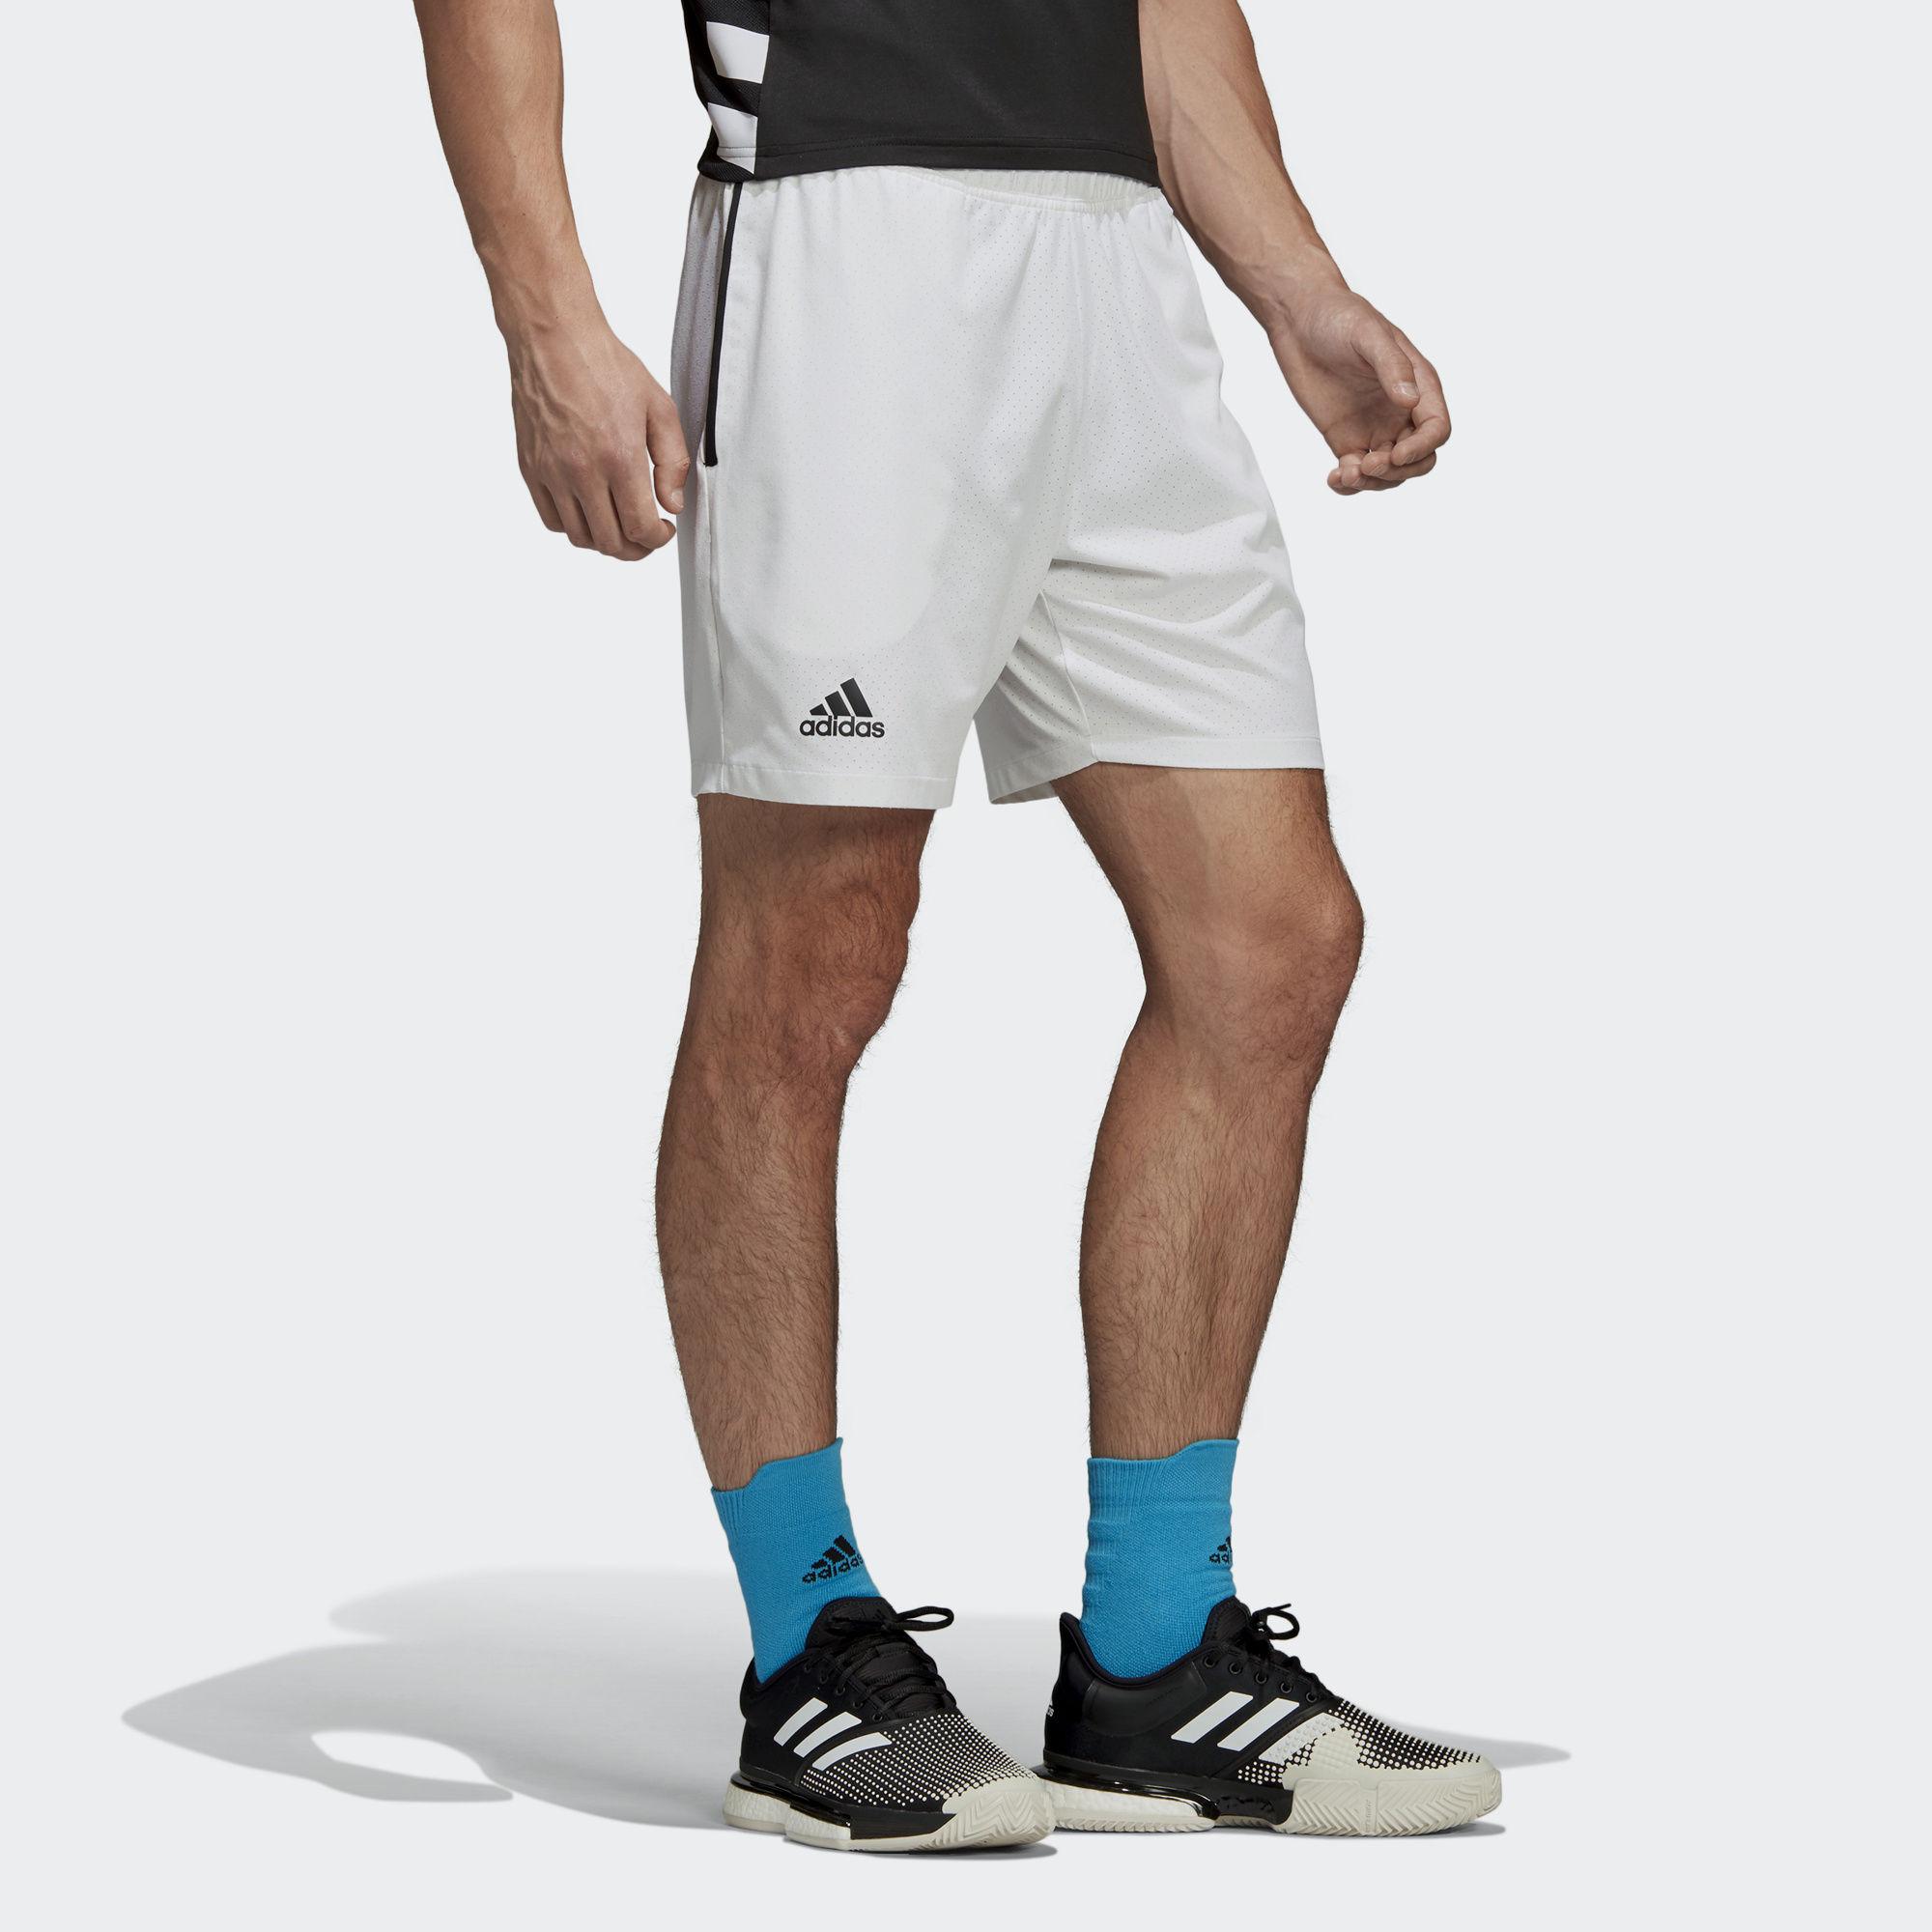 Adidas Mens Escouade 7 Inch Shorts - White - Tennisnuts.com